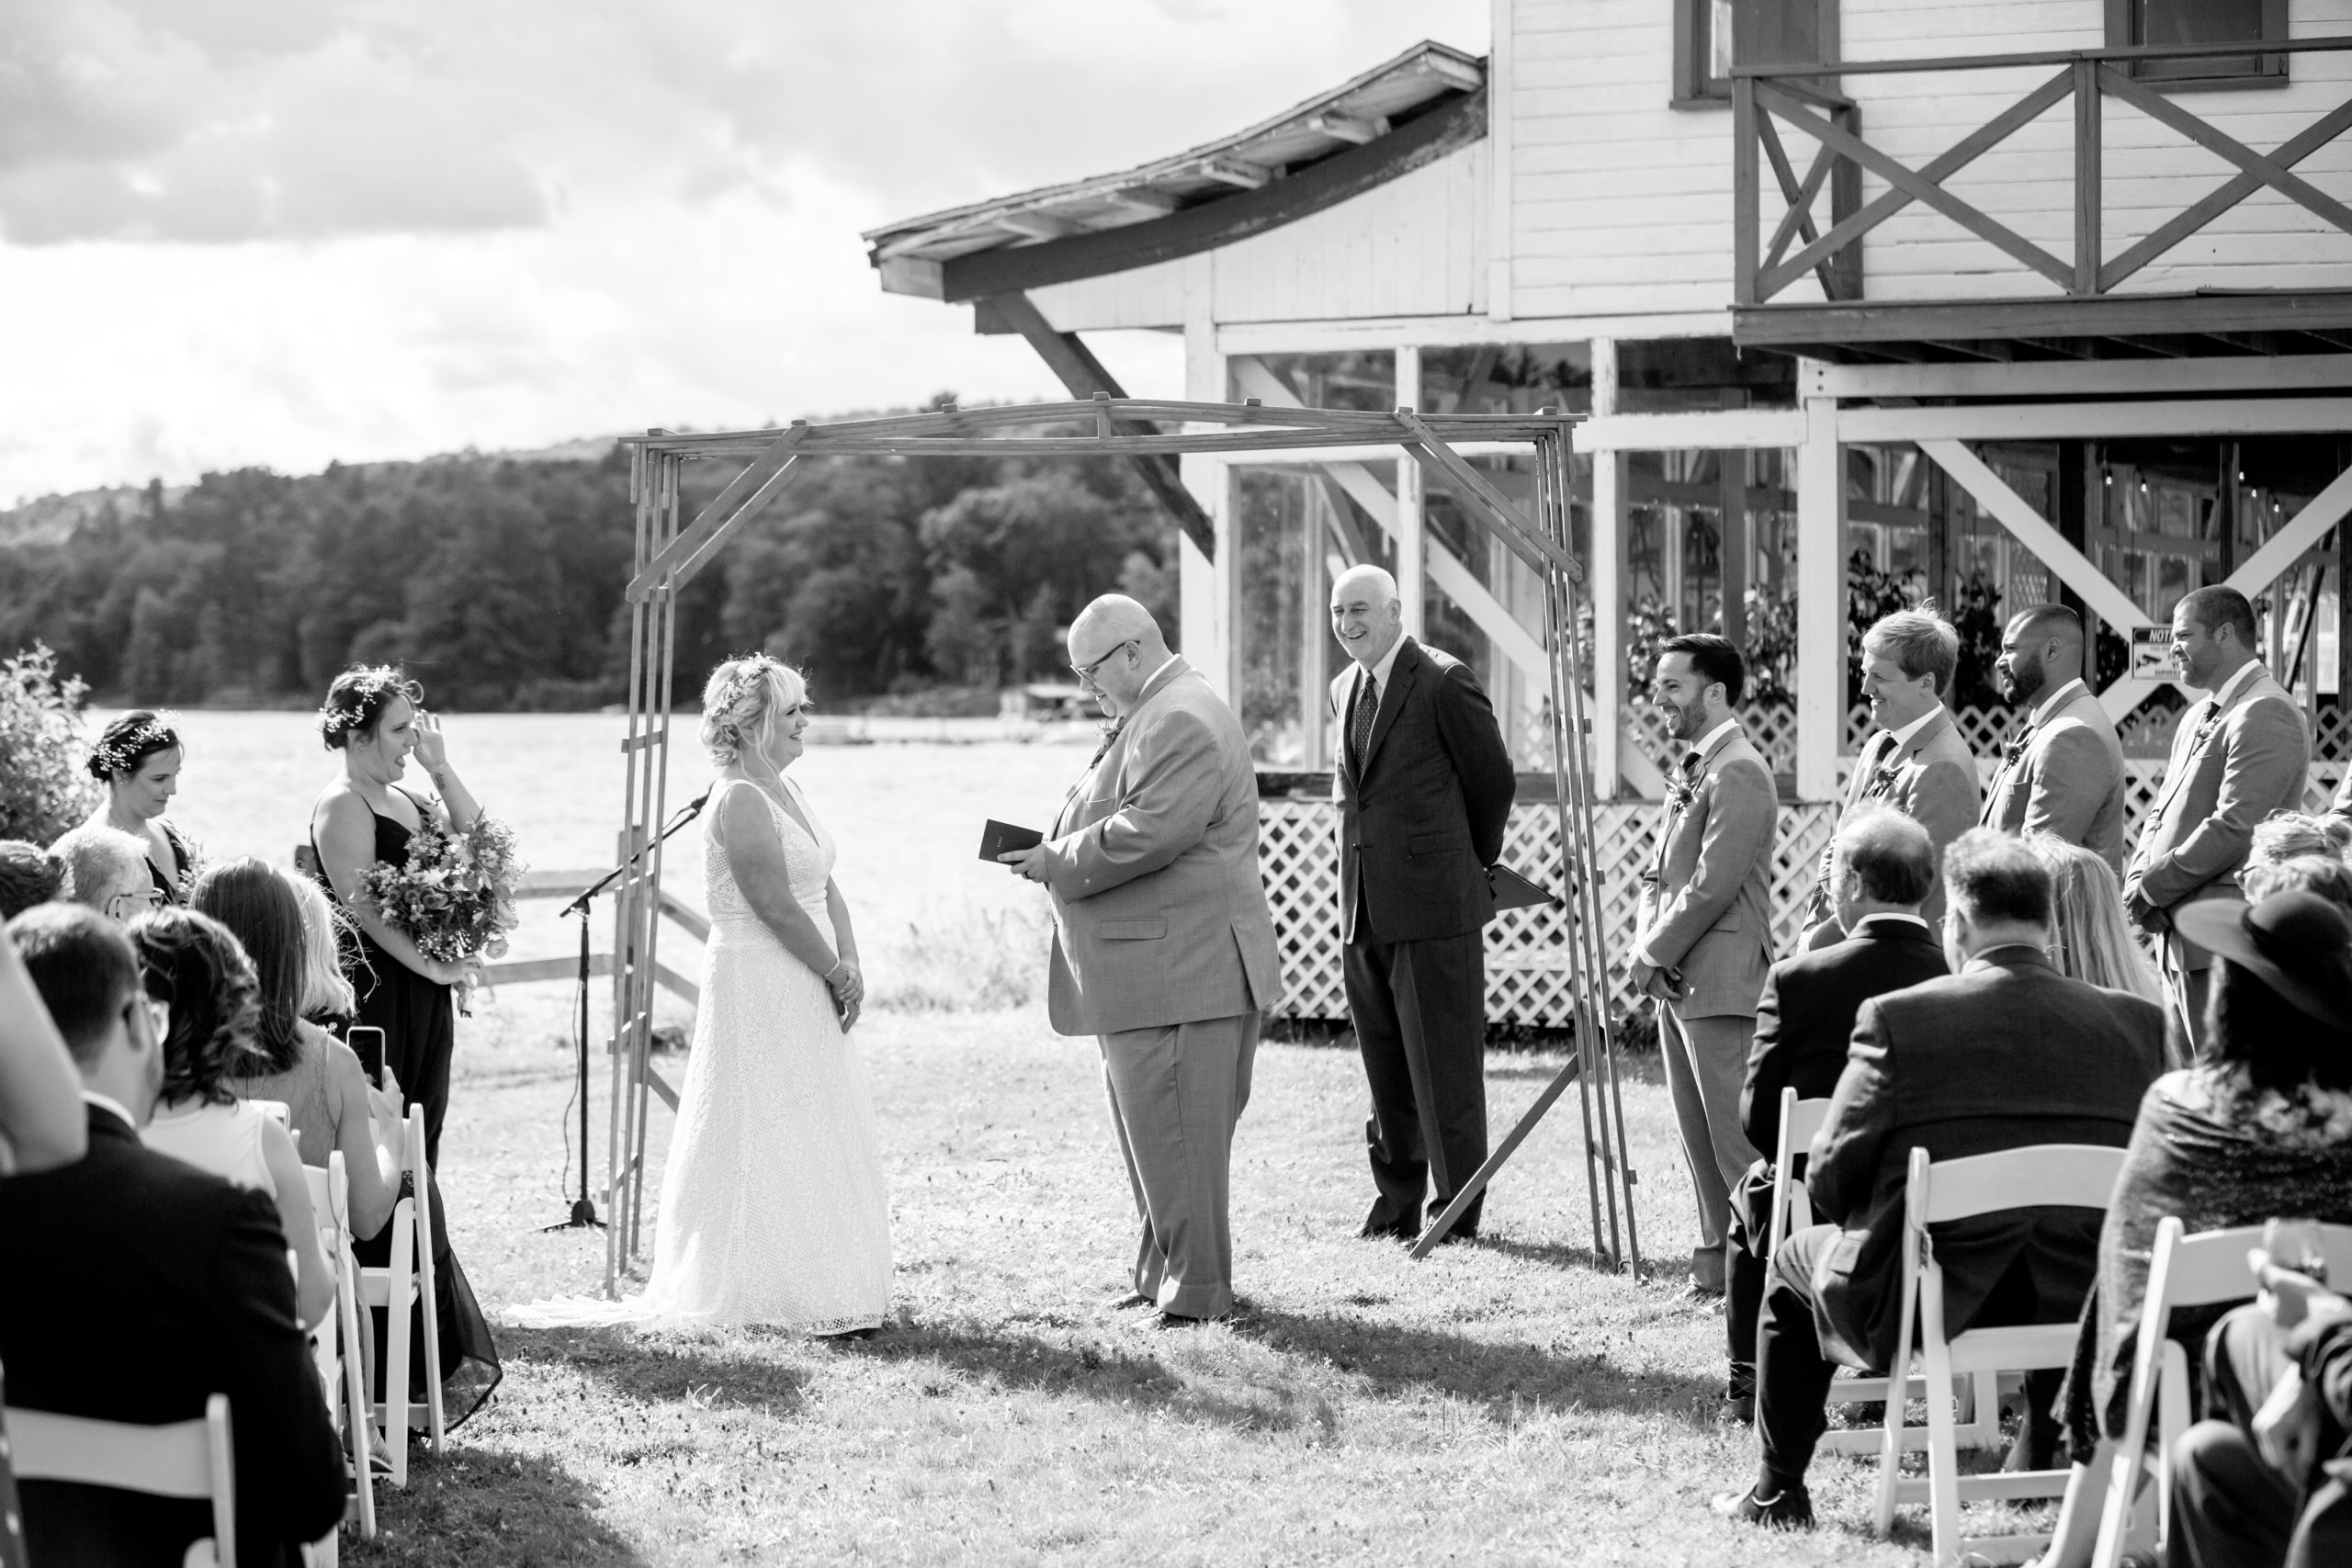 Caroga Lake, NY. Adirondack Wedding Photography by Empire West Photo.